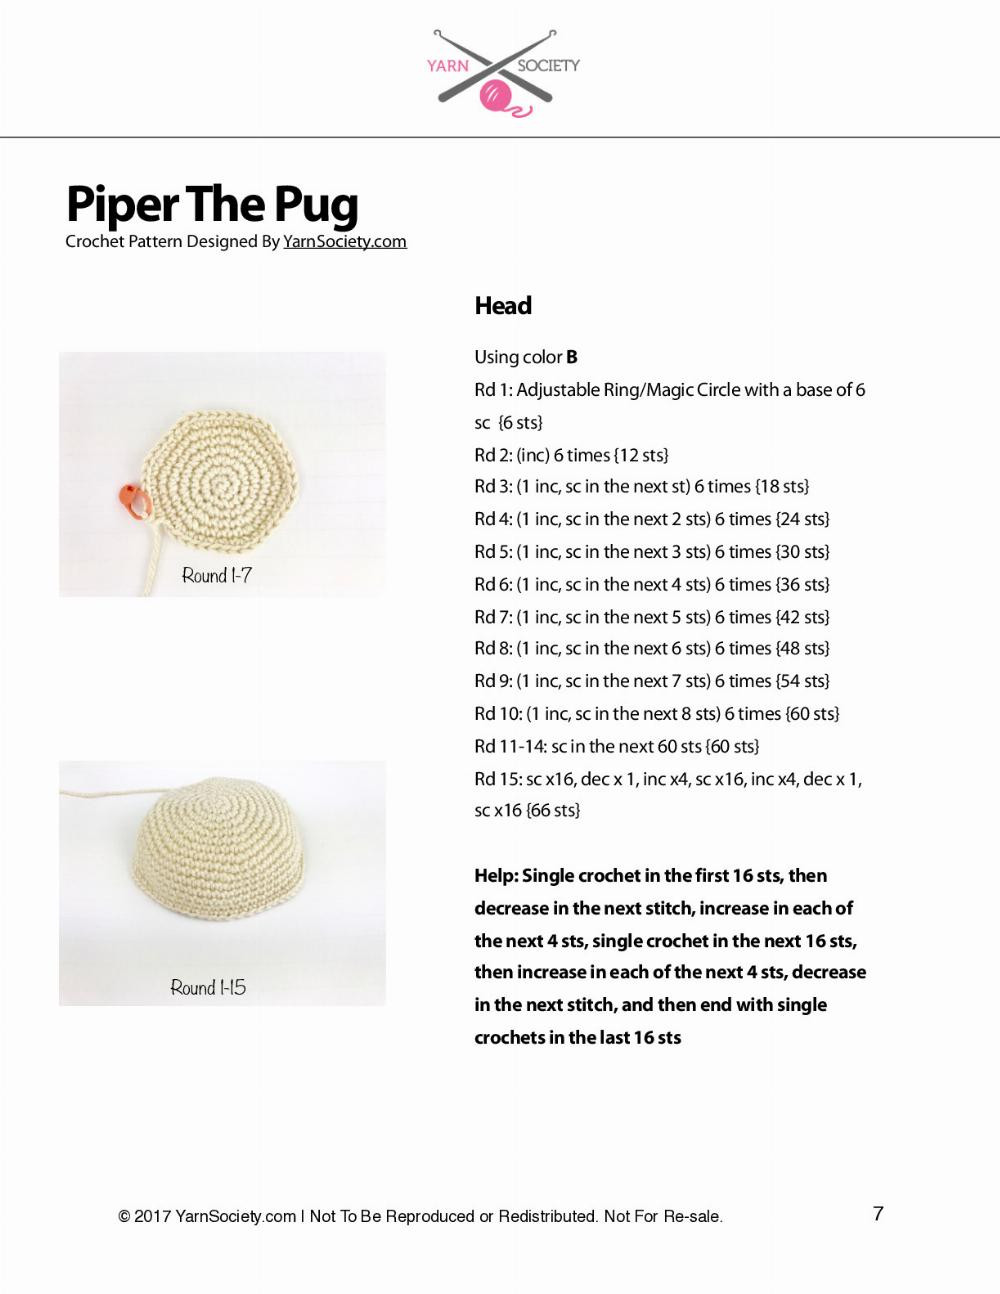 Piper The Pug Born crochet pattern